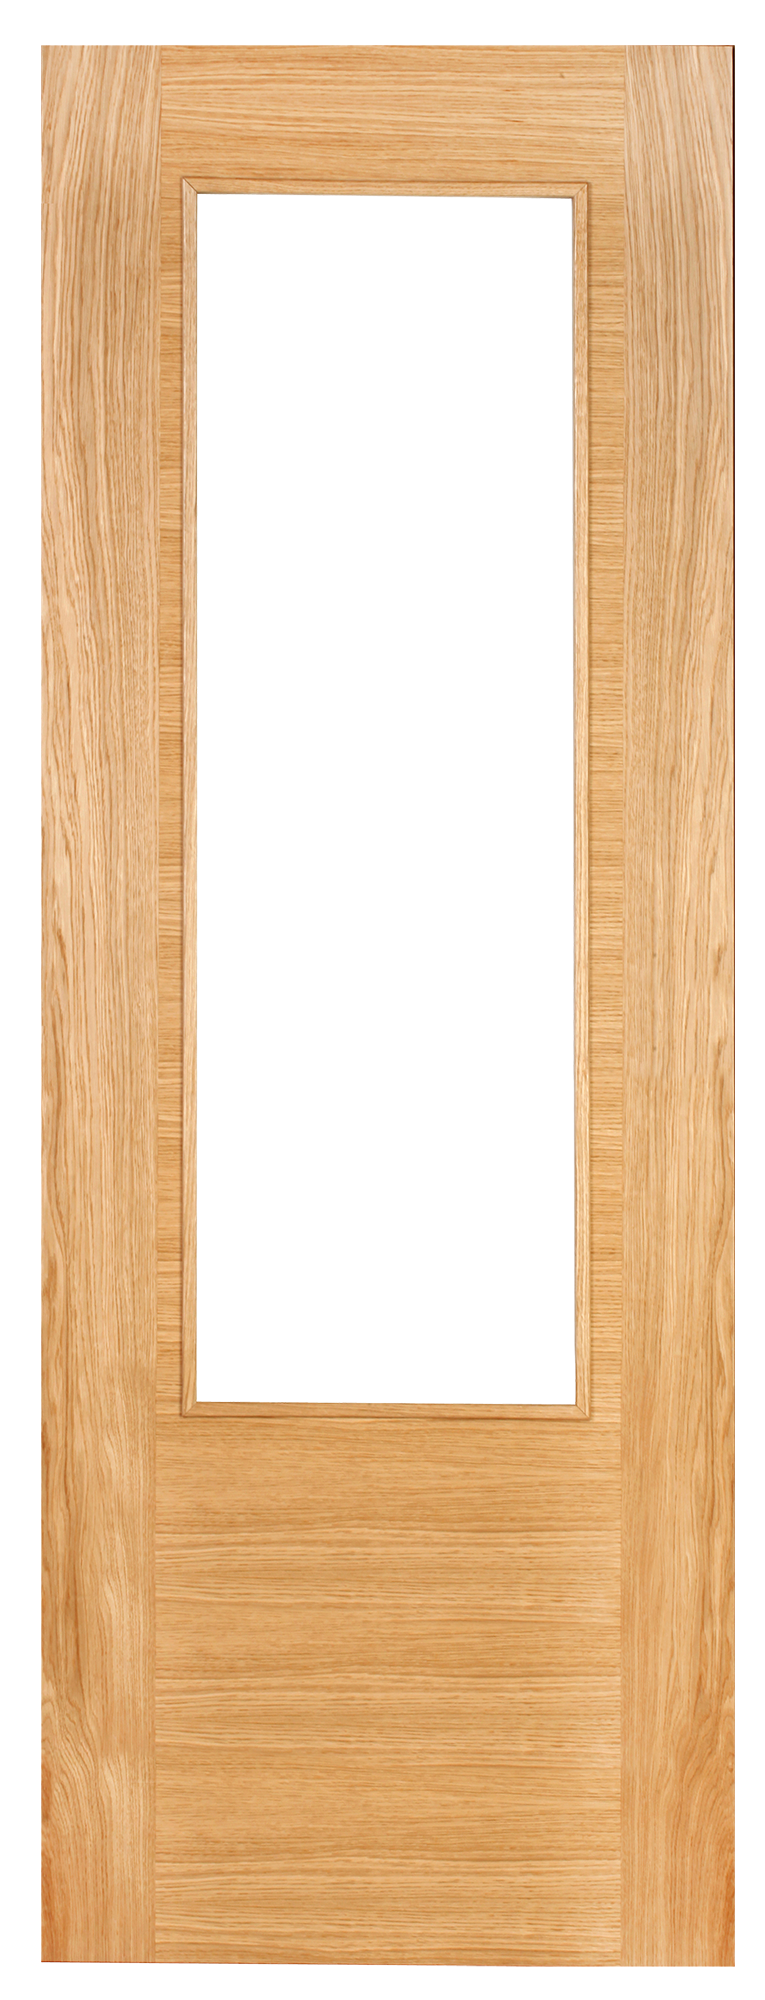 Puerta corredera niza roble line plus roble con cristal de 72.5x203cm